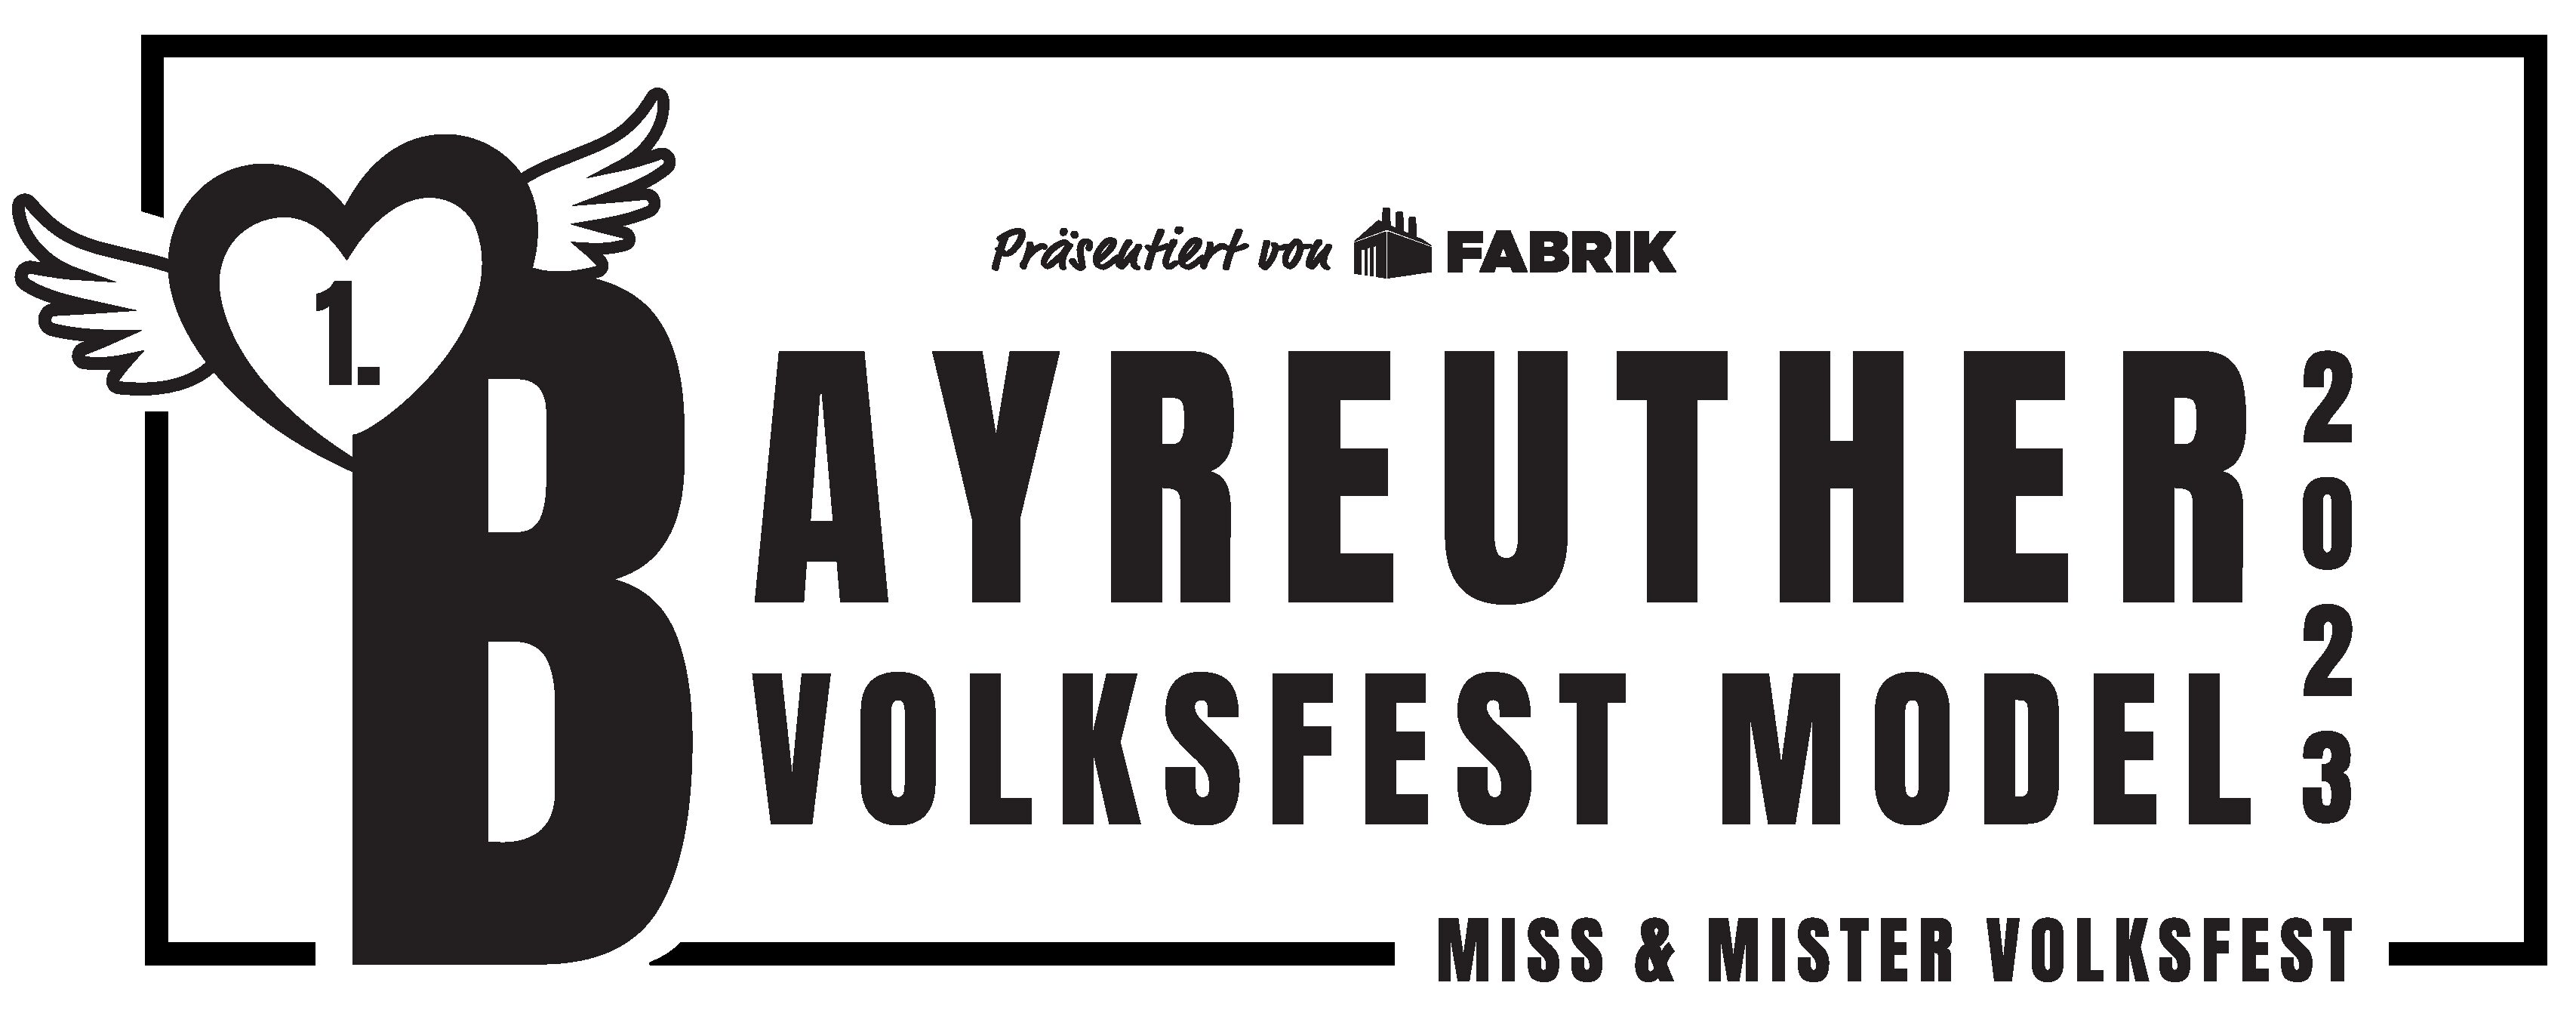 1. Bayreu­ther Volks­fest Model gesucht